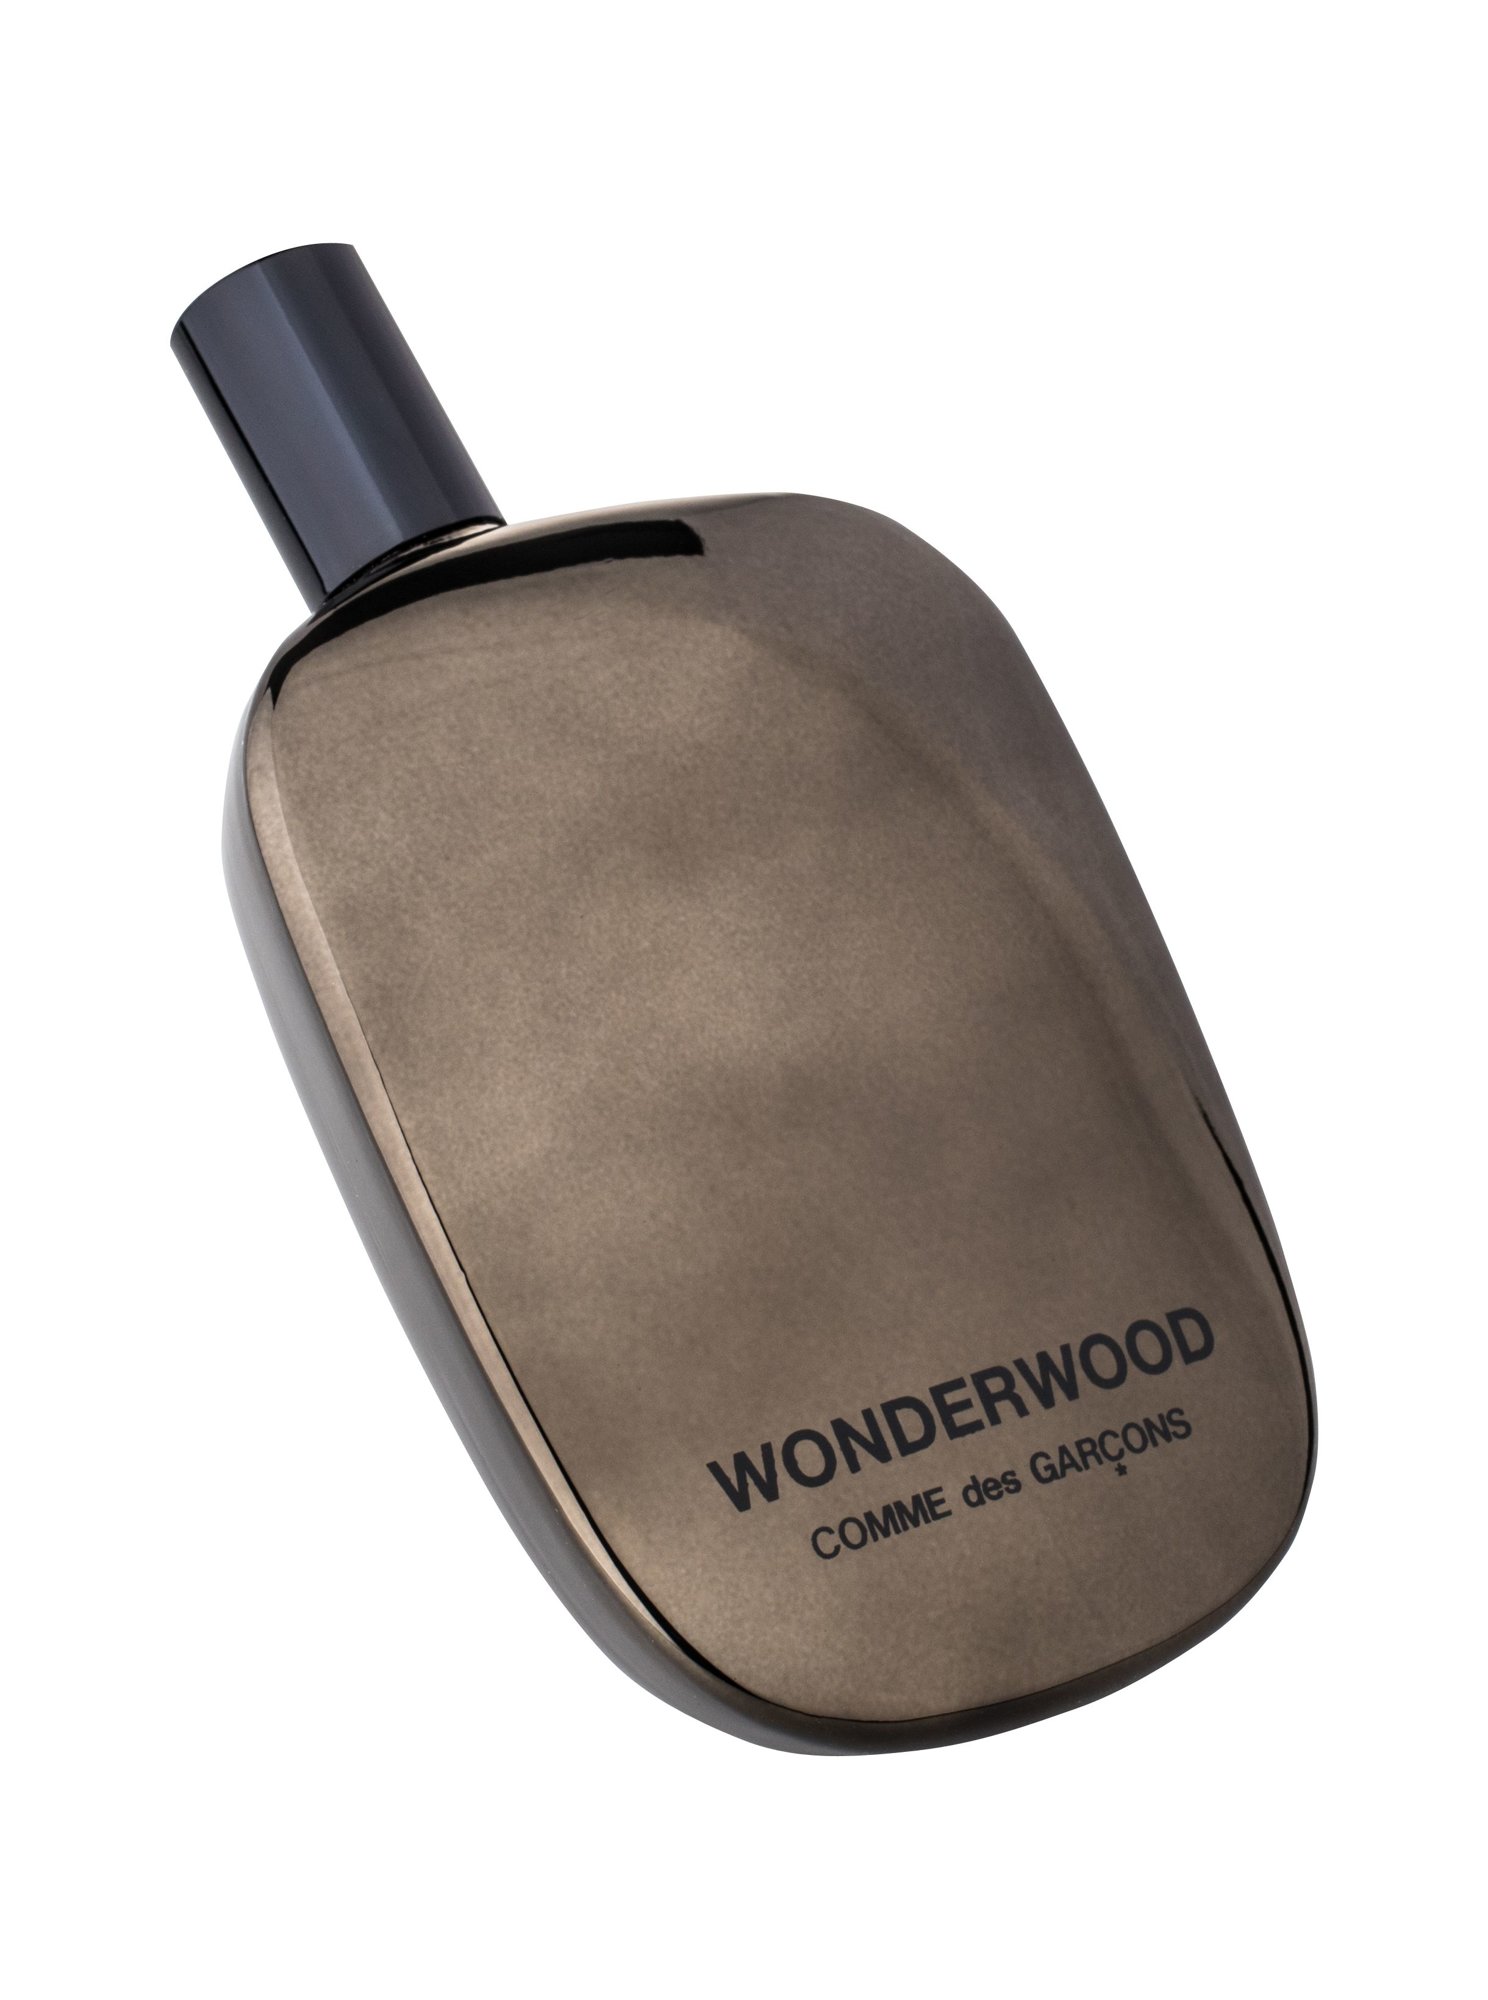 COMME des GARCONS Wonderwood 20 ml NIŠINIAI kvepalų mėginukas (atomaizeris) Vyrams EDP